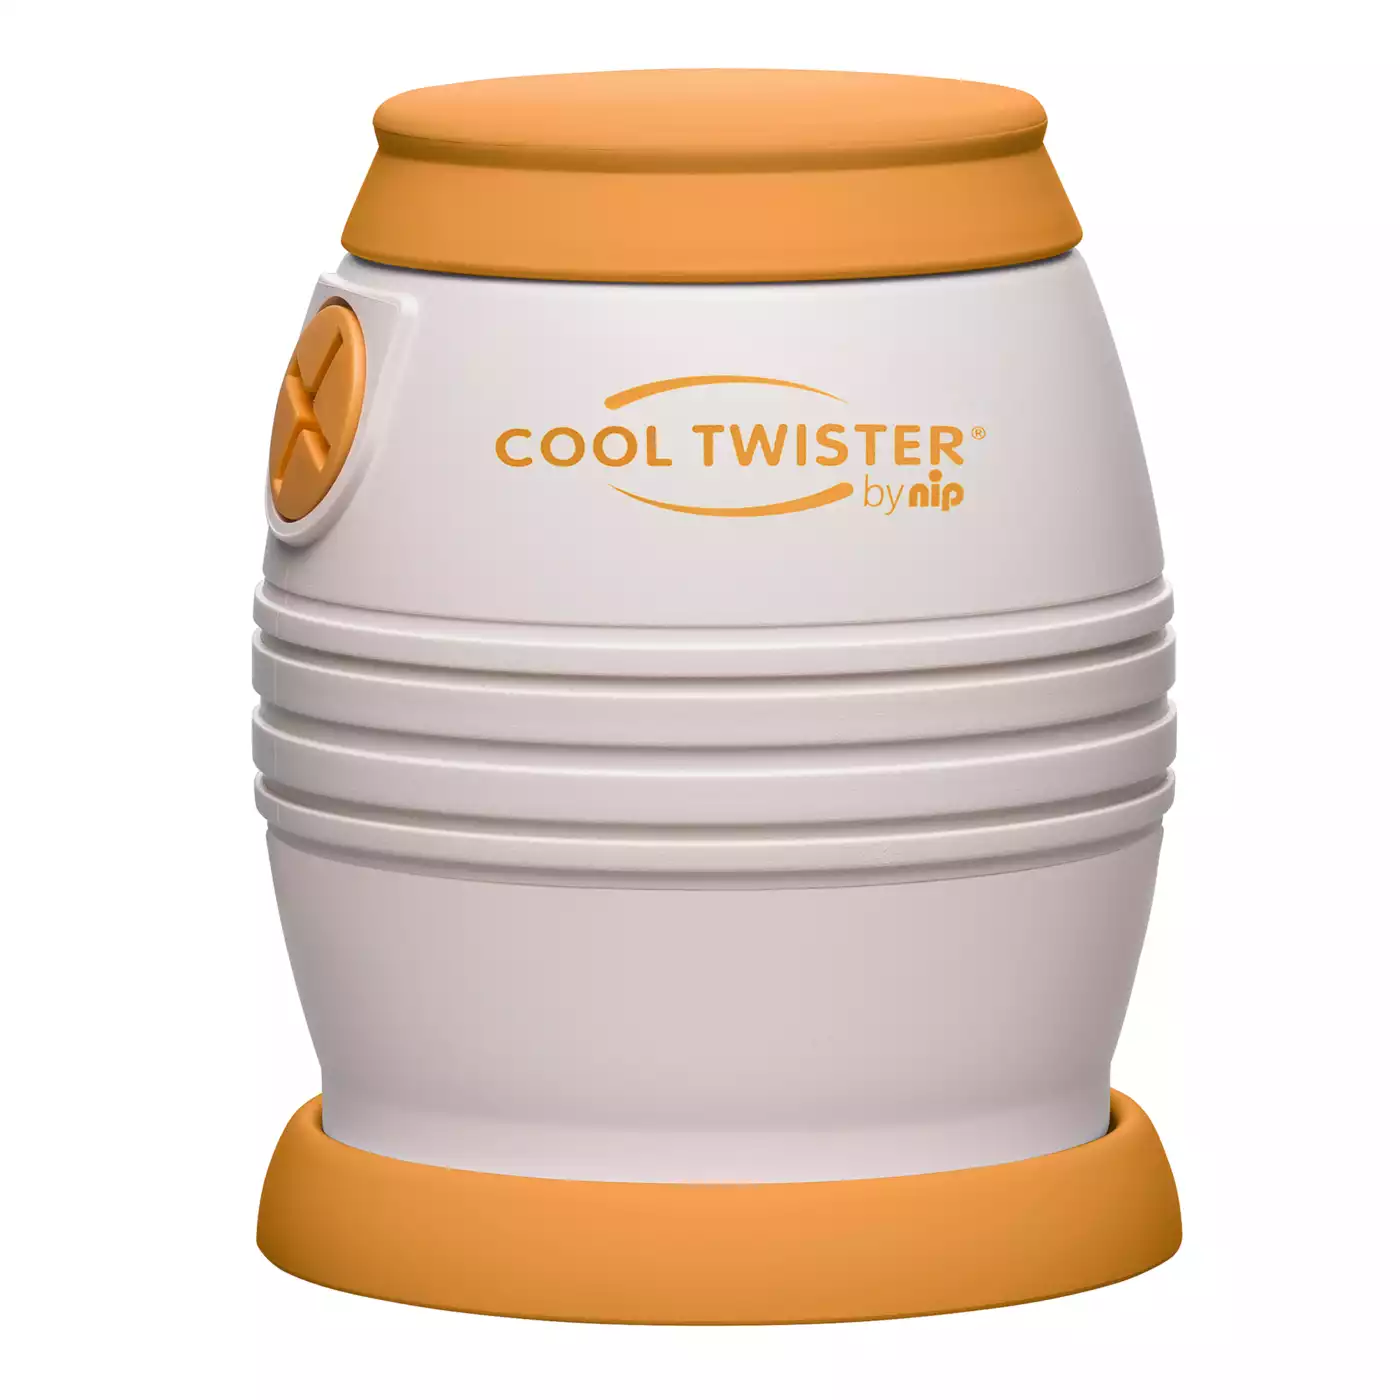 Fläschchenwasser-Abkühler Cool Twister nip 2000573056303 3